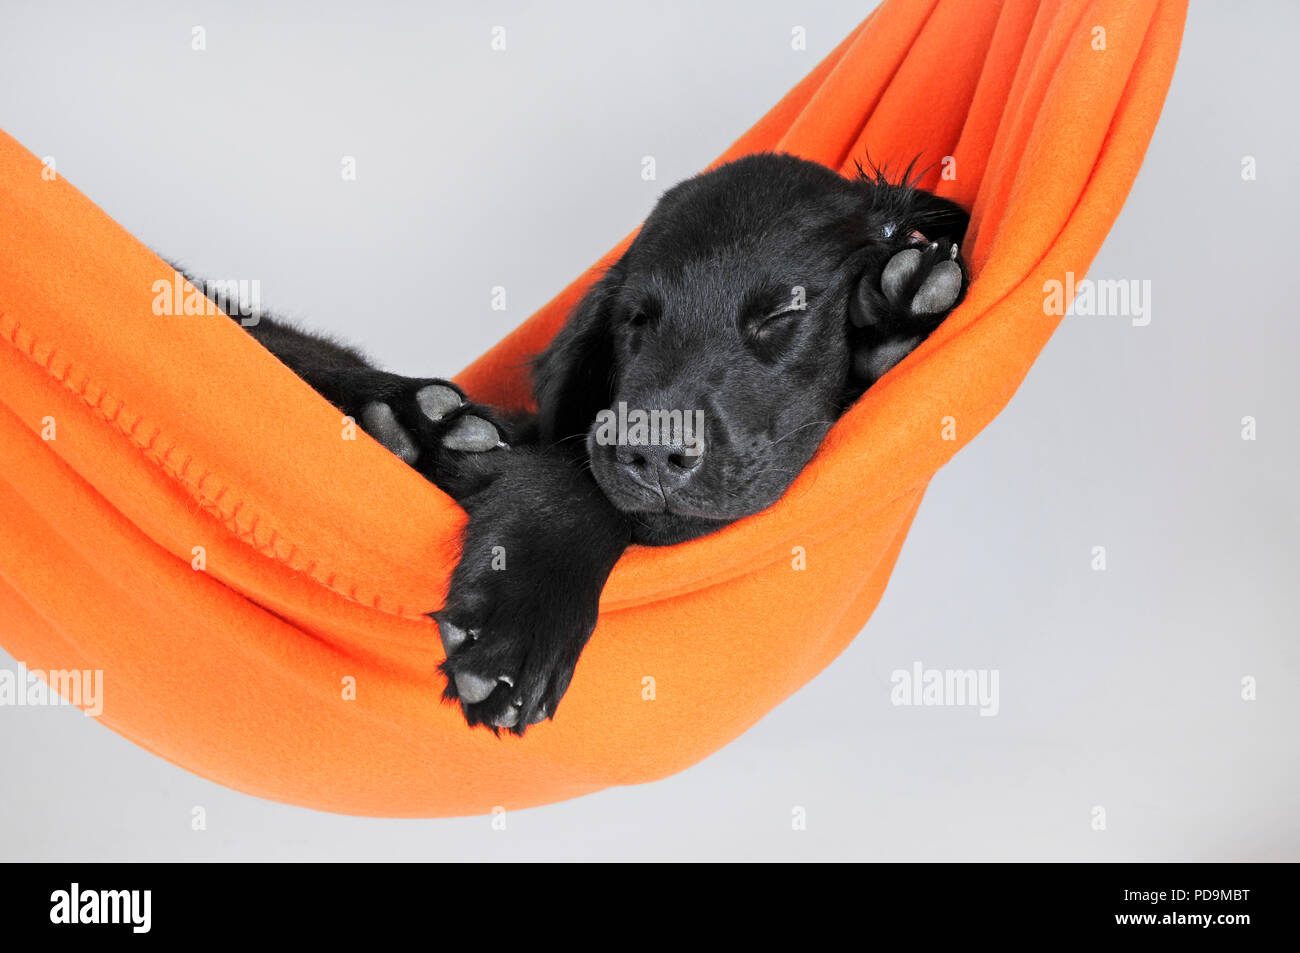 Flat Coated Retriever, chiot 9 semaines, noir, couché dans un hamac d'orange, studio shot, Autriche Banque D'Images